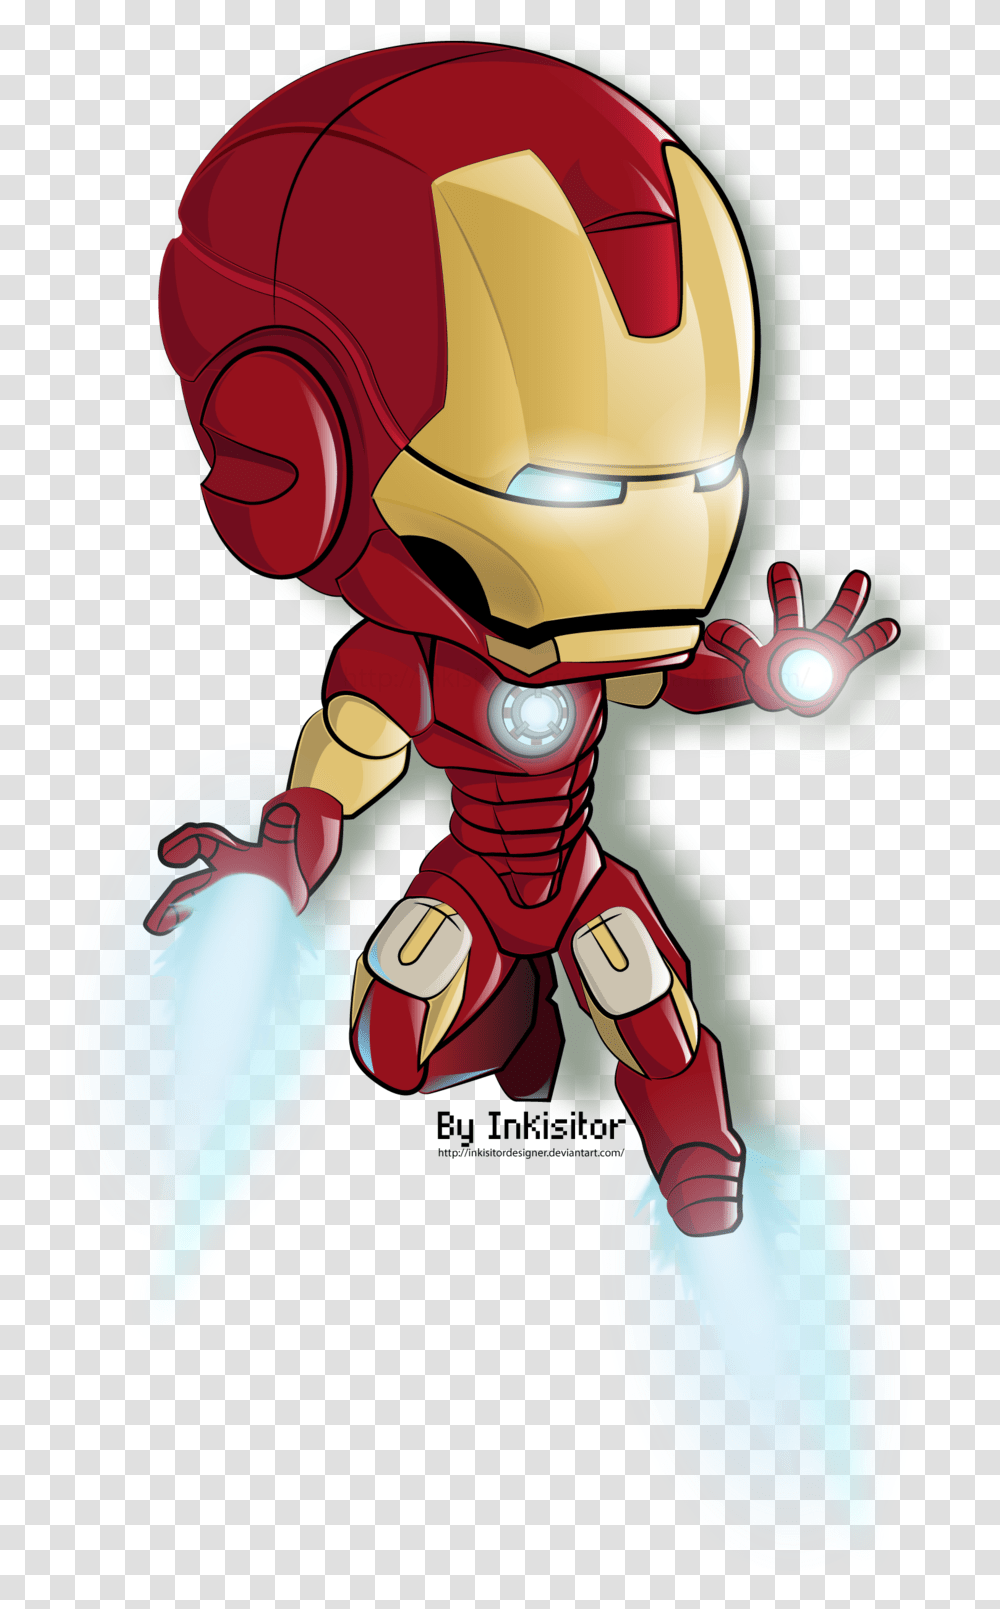 Drawing Photoshop Iron Man Iron Man Cartoon, Toy, Helmet, Apparel Transparent Png